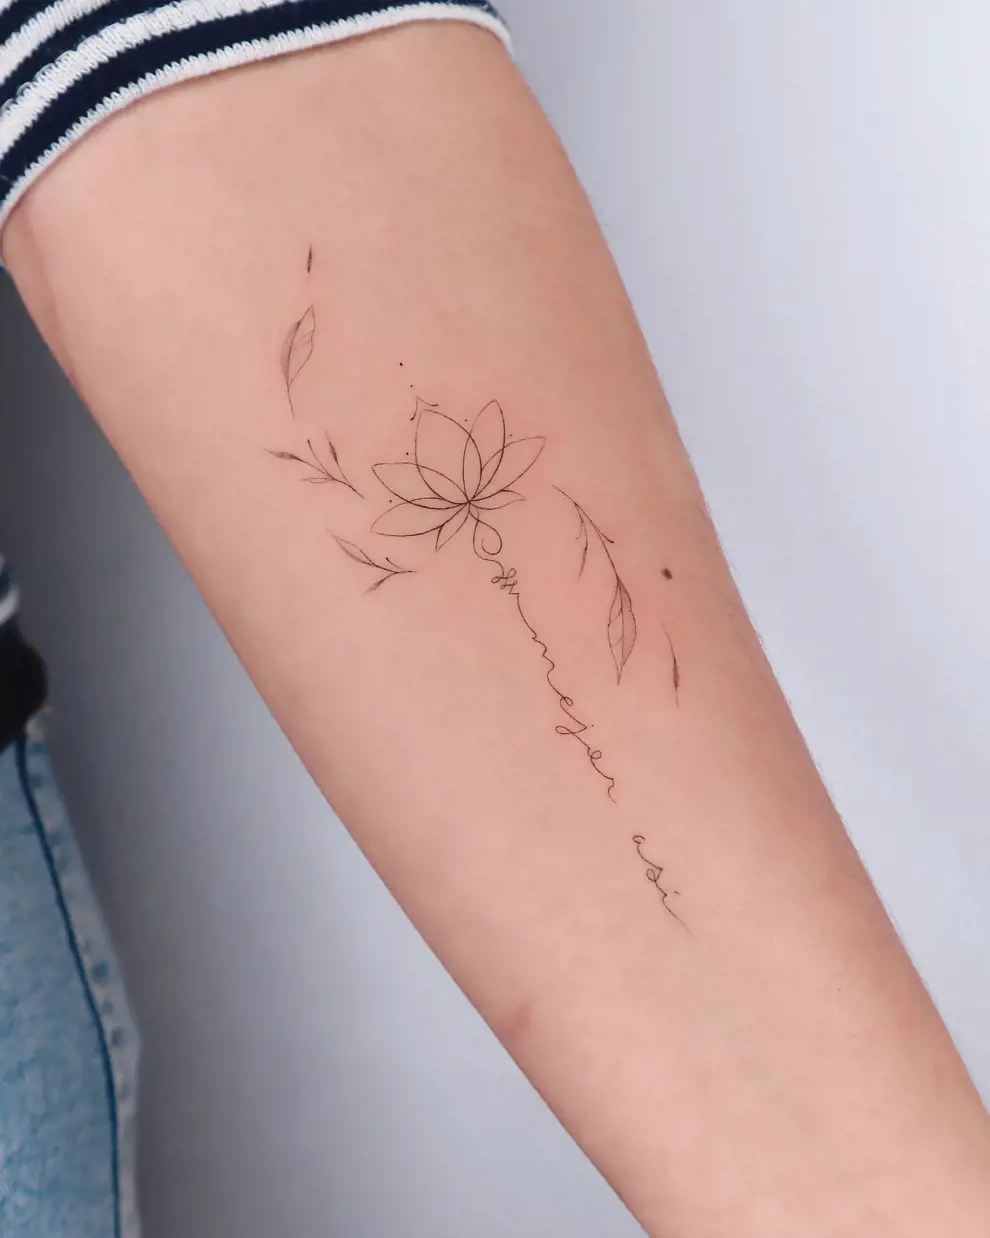 Tatuaje flor de loto con frase